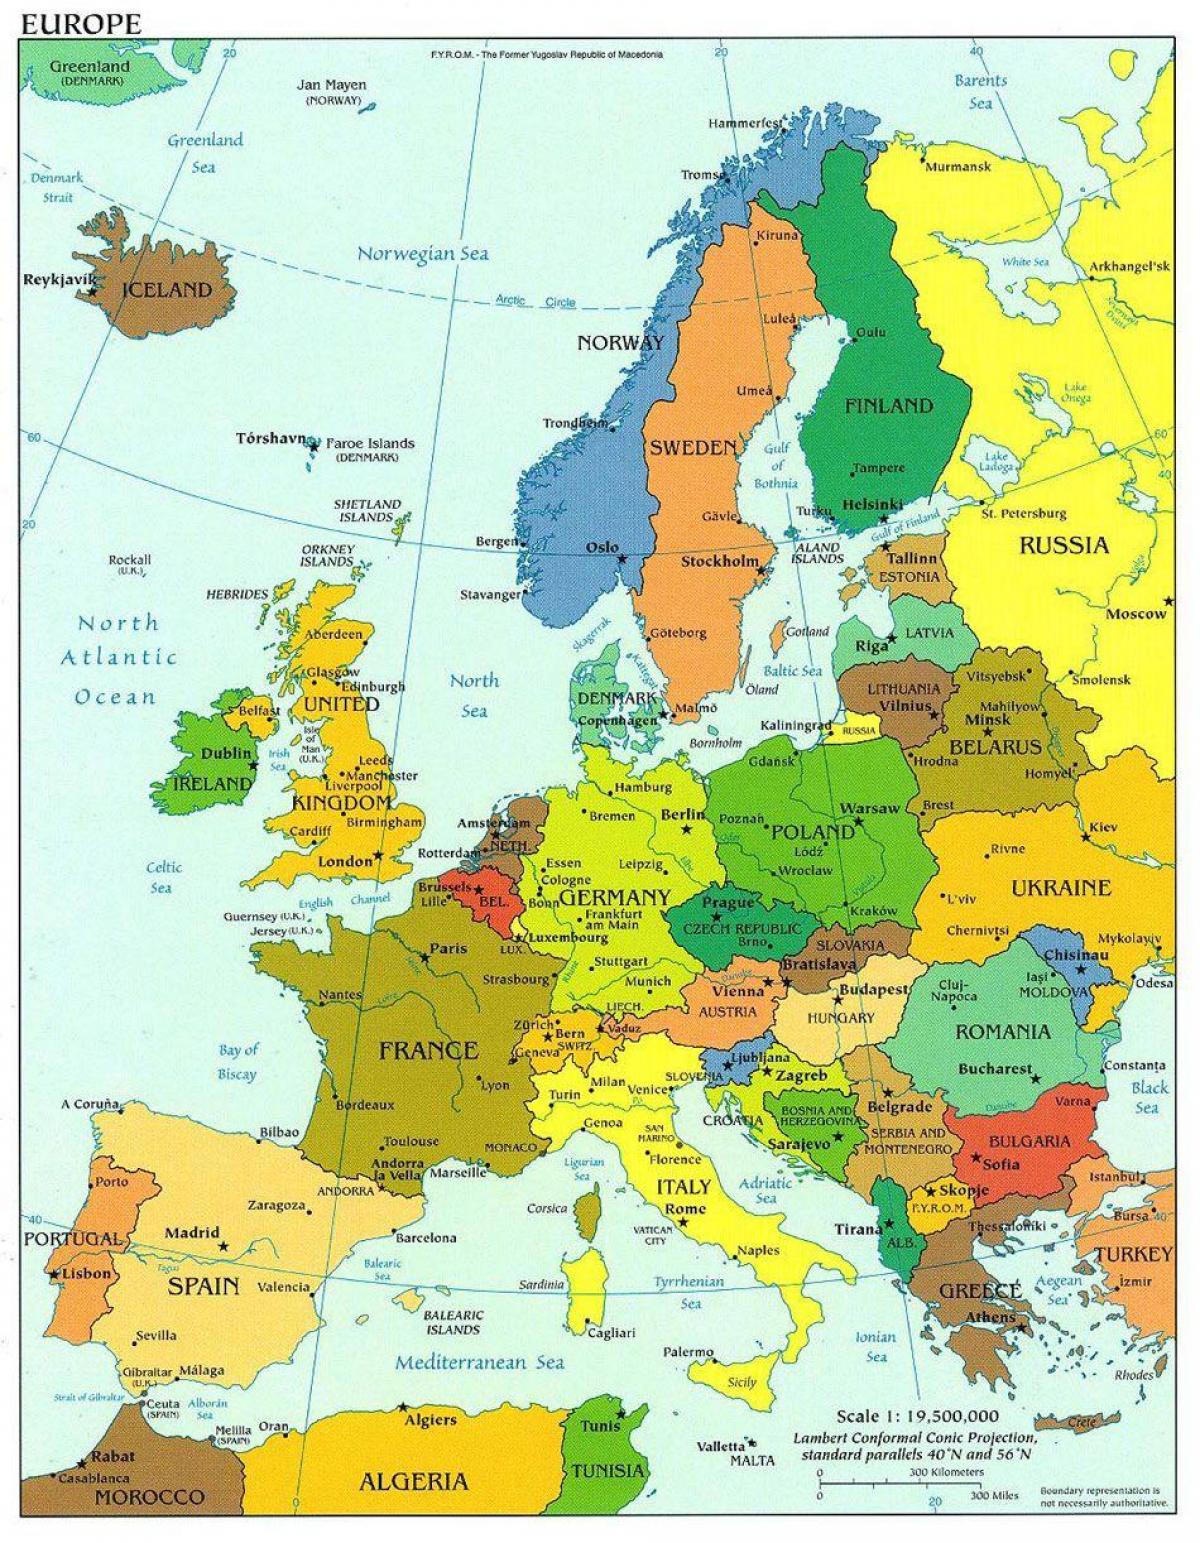 યુરોપ નકશો દર્શાવે છે, ડેનમાર્ક